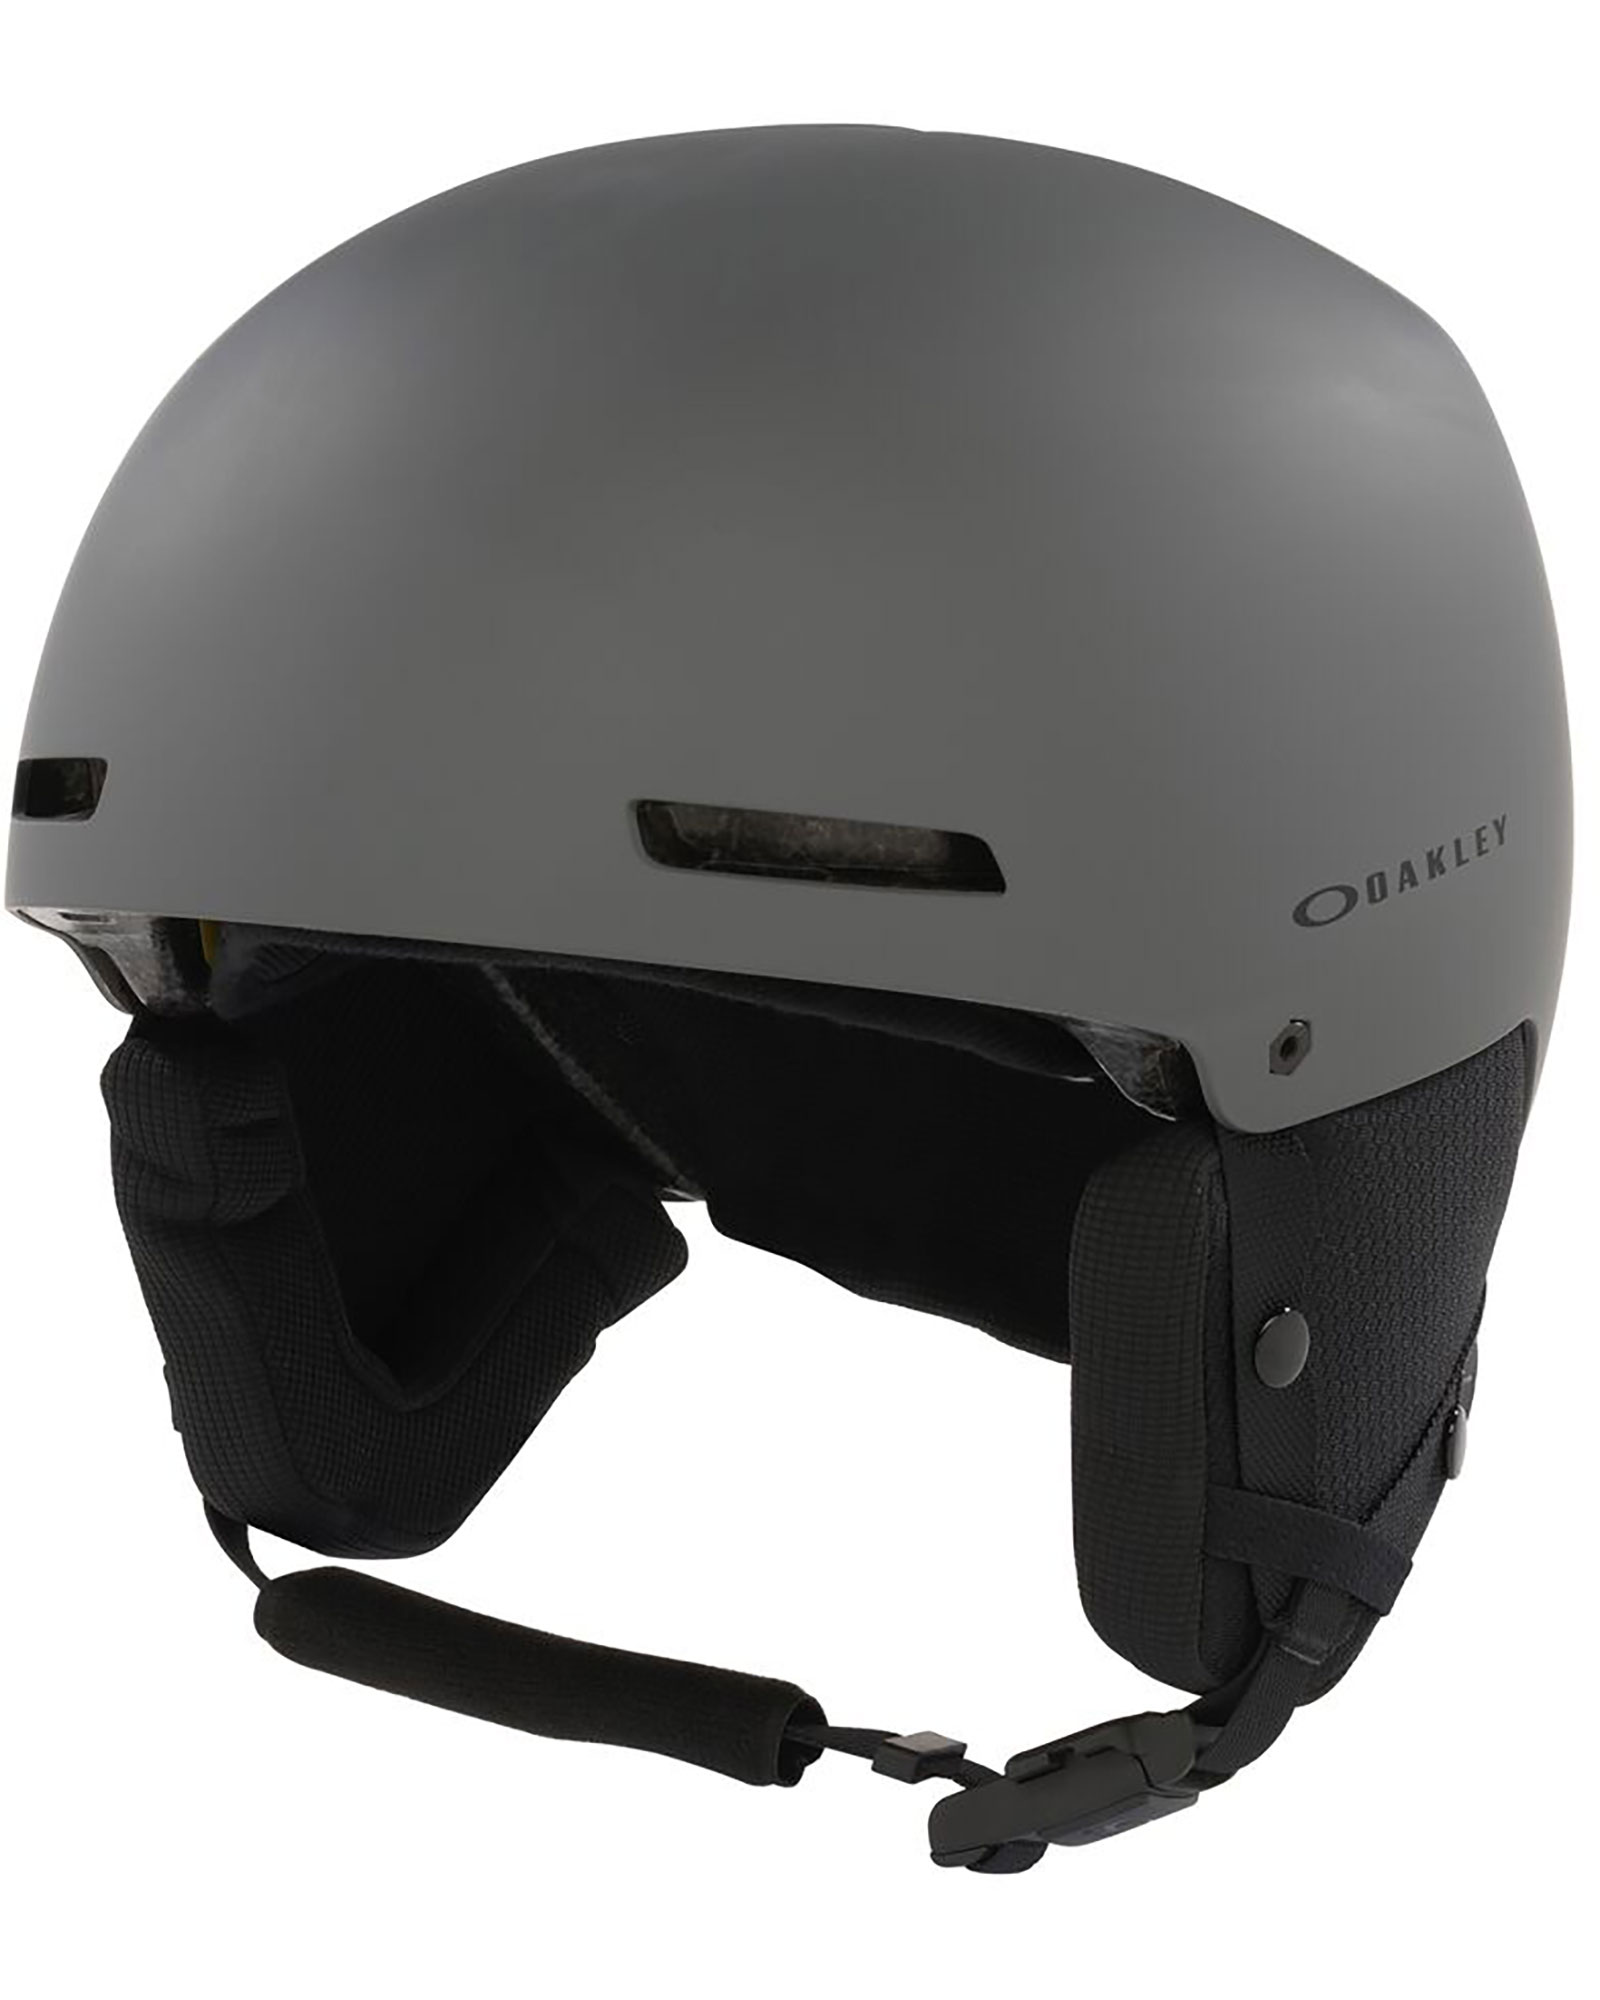 Oakley MOD1 Pro Helmet - Forged Iron M